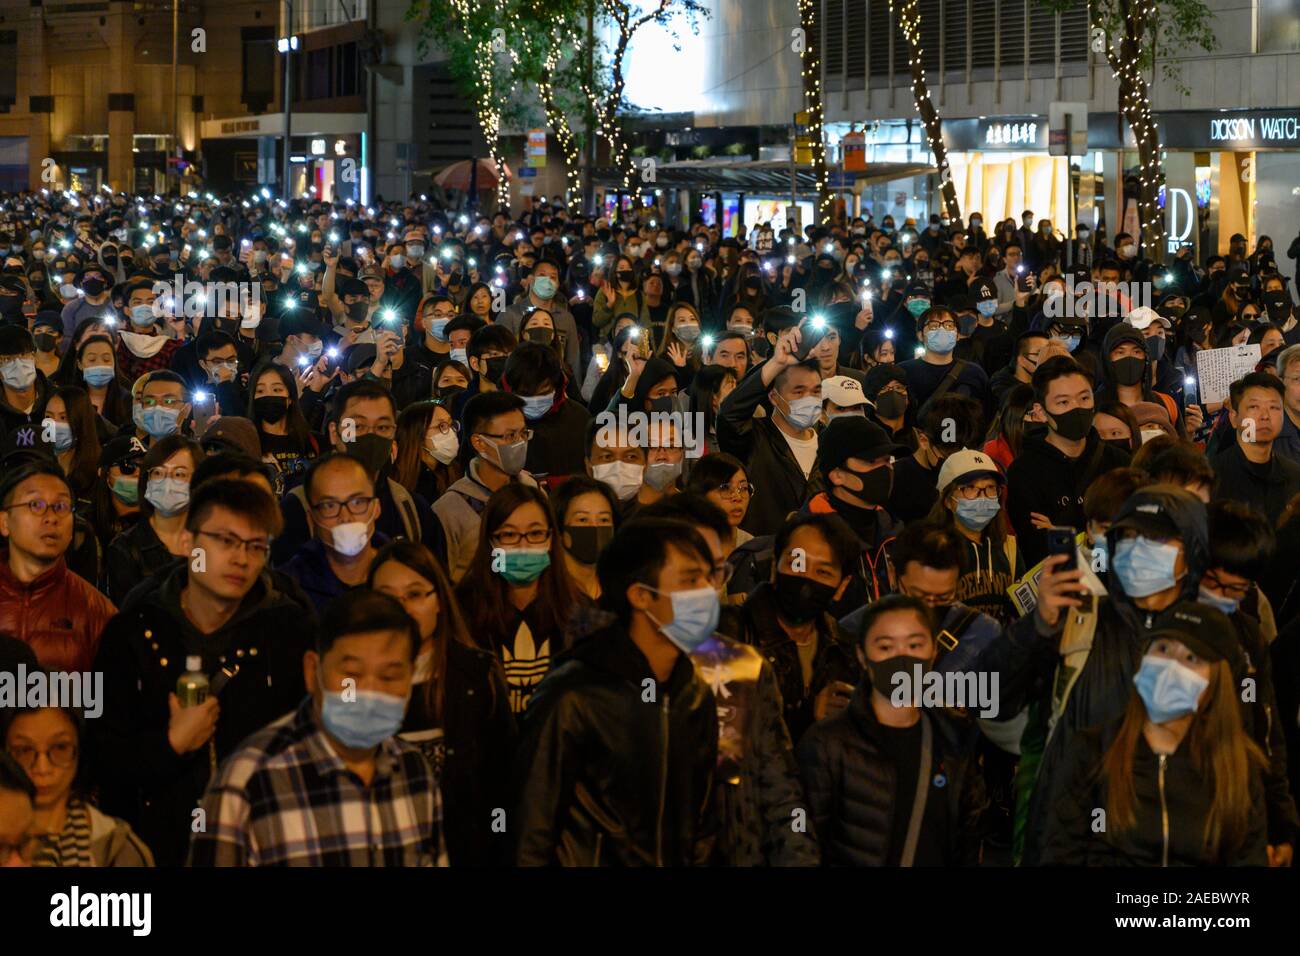 "Dezember 8 2019 Hongkong - Insel. Schätzungsweise 800.000 Bürger von Hongkong nahmen an einem meist friedlichen März als Teil der International-Human - Rights-Day-Rallye organisiert von der Civil-Human - Rights-Front." Stockfoto